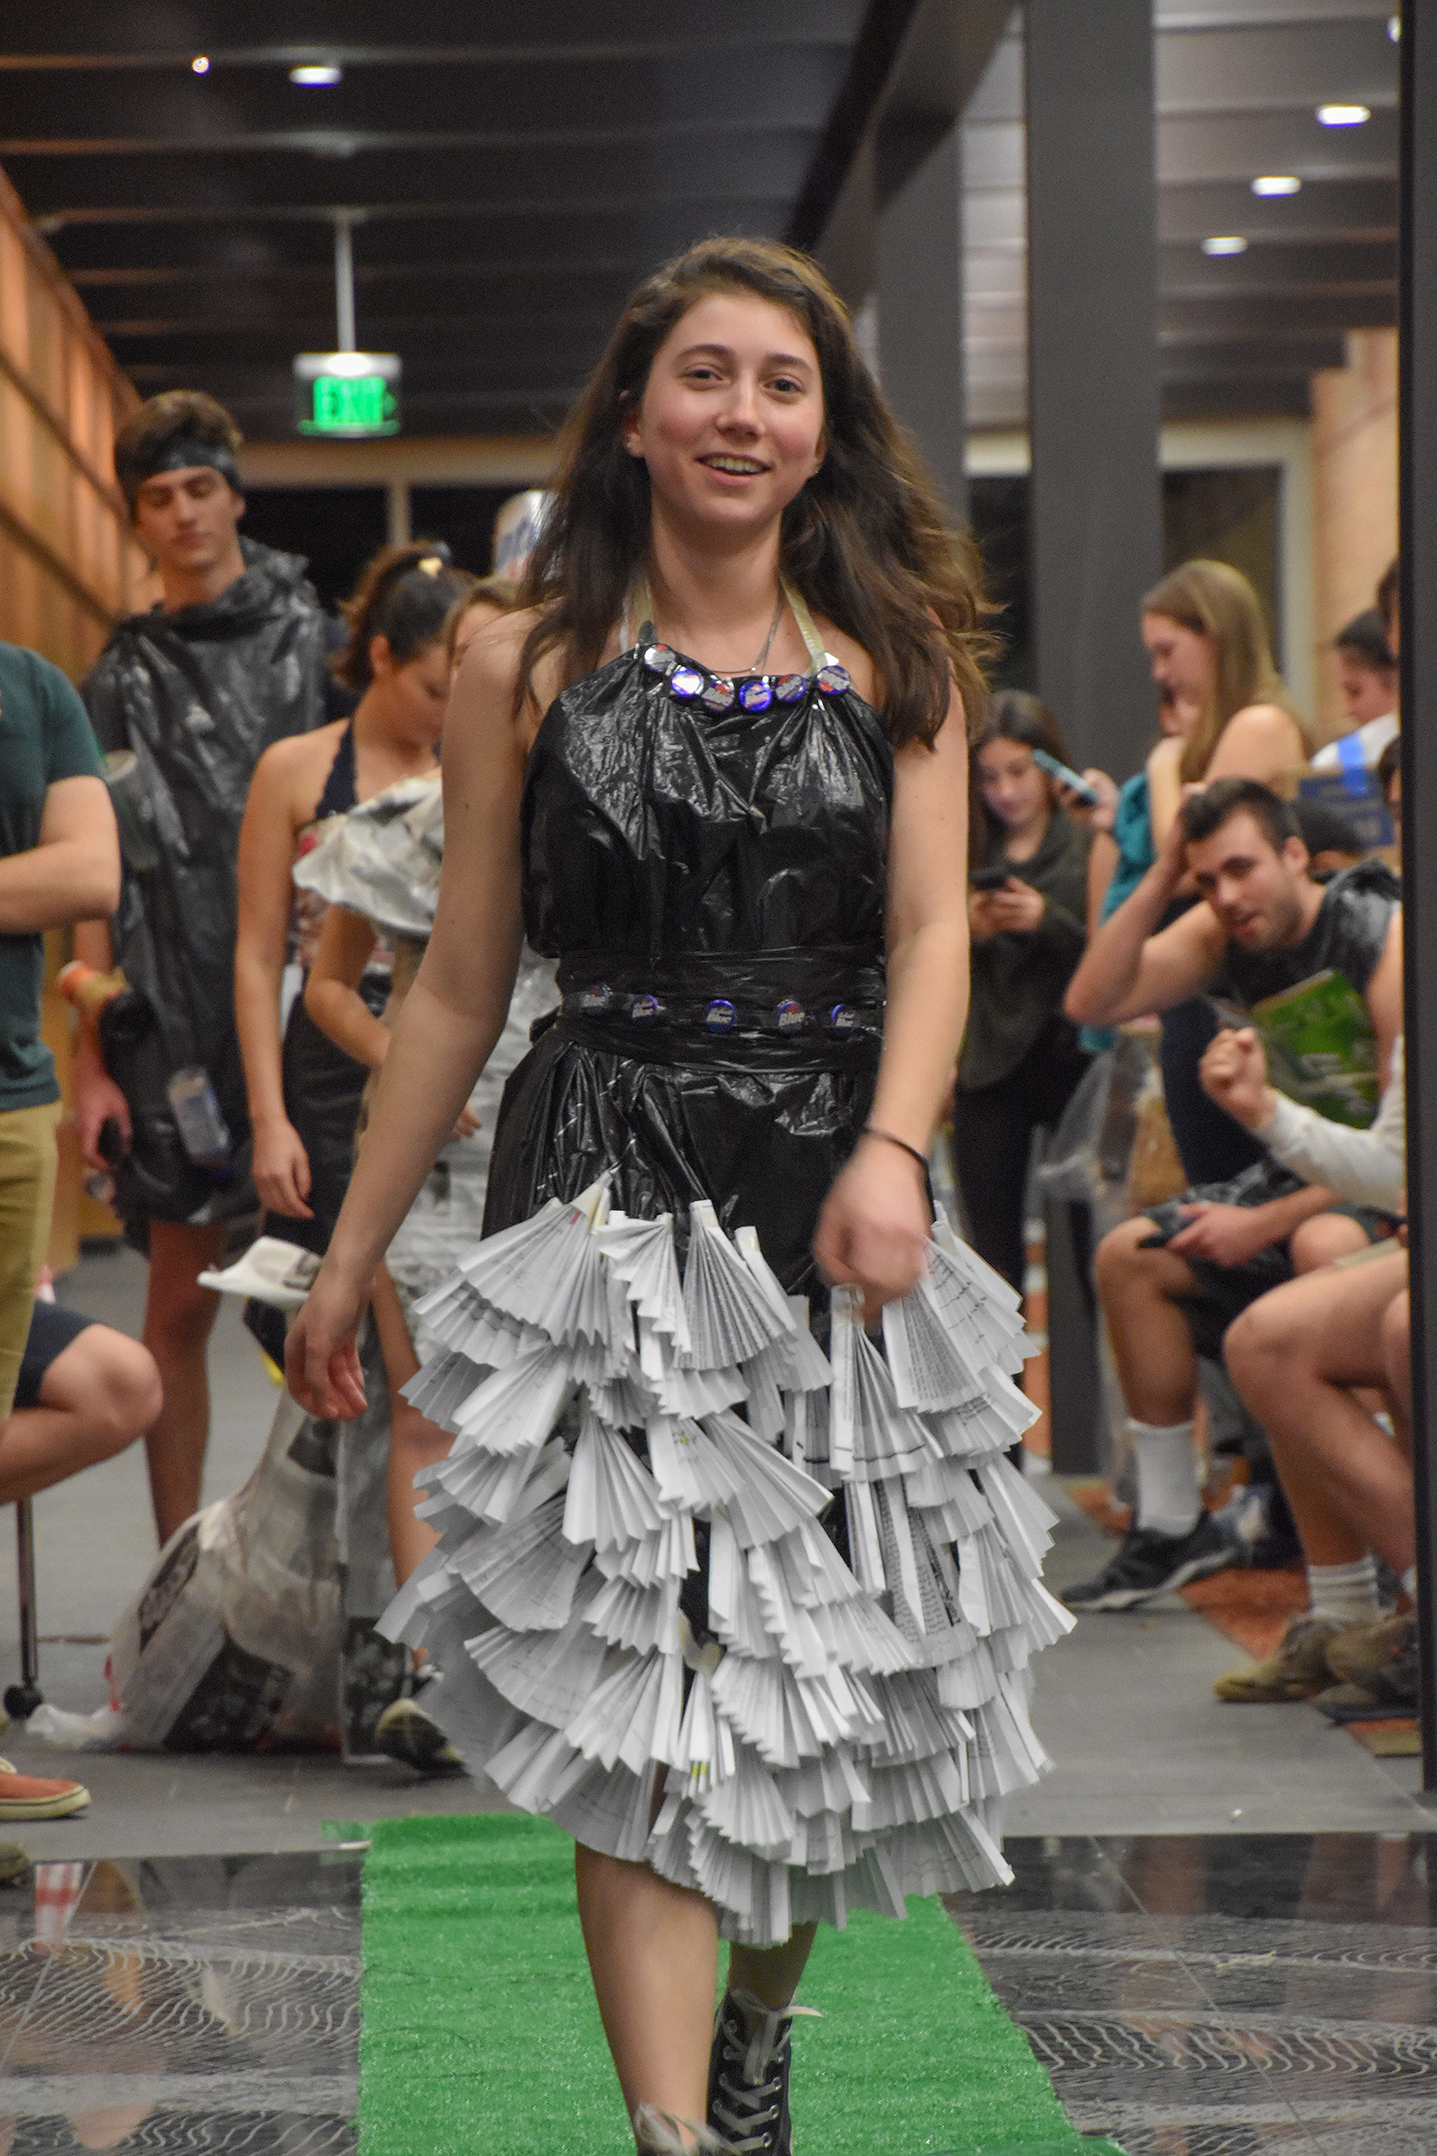 Trashion show: Recycled trash into fashion